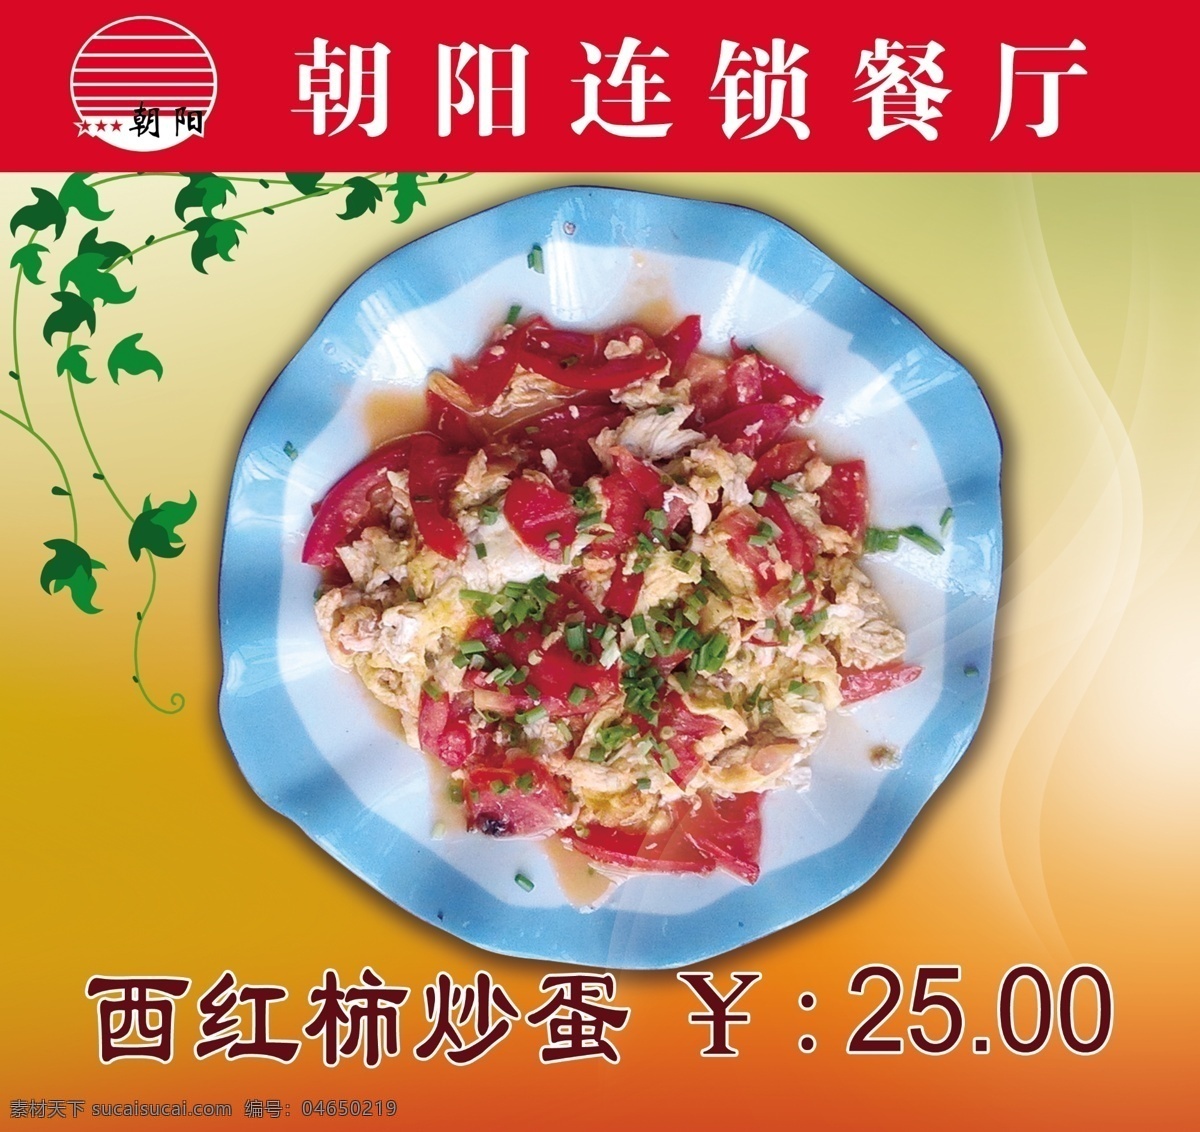 西红柿 炒 蛋 菜 牌 西红柿炒蛋 菜牌 朝阳连锁 餐厅菜牌 菜单 菜单菜谱 红色